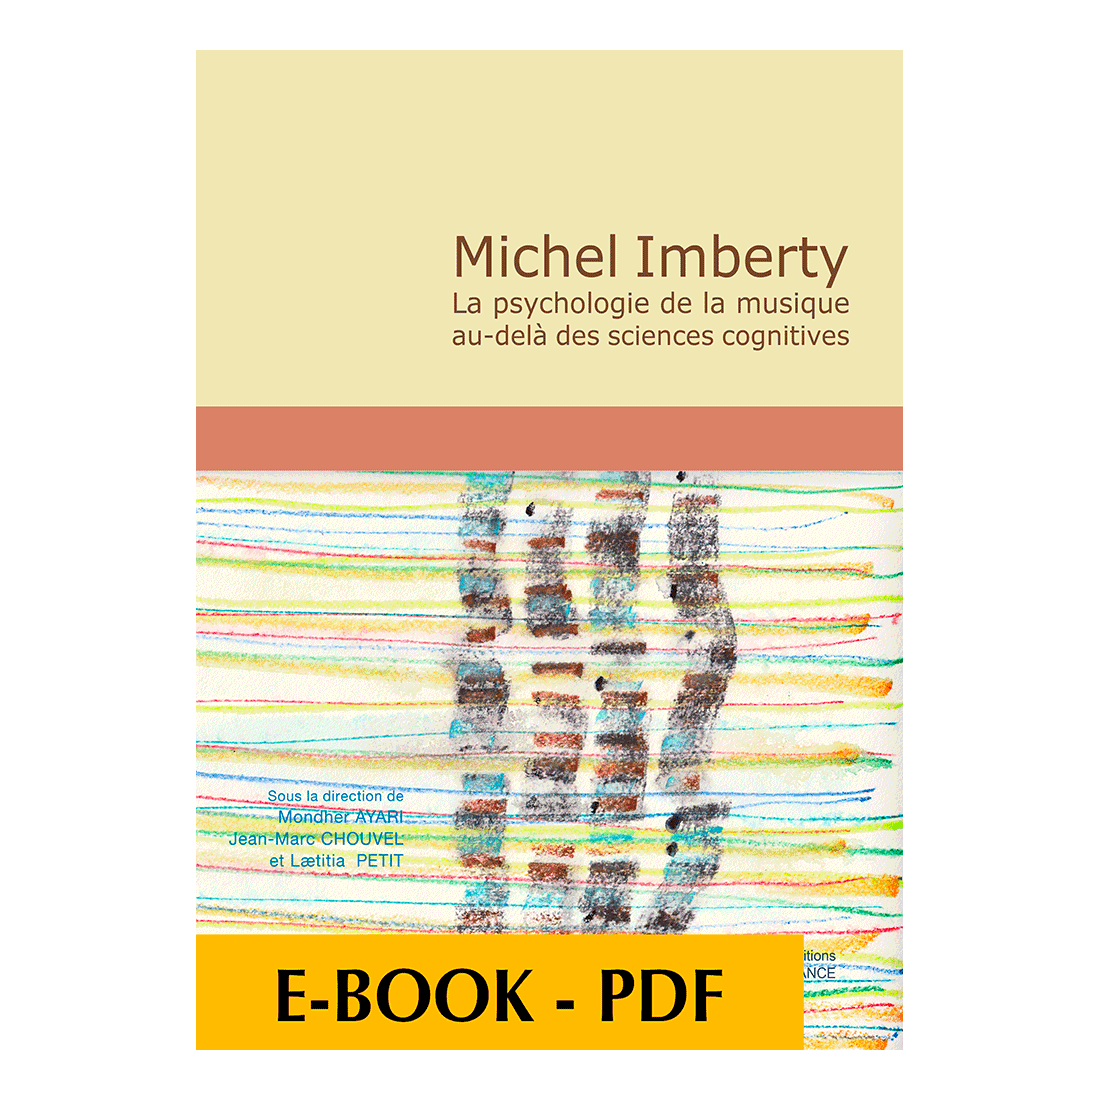 Michel Imberty - La psychologie de la musique au-delà des sciences cognitives - E-book PDF